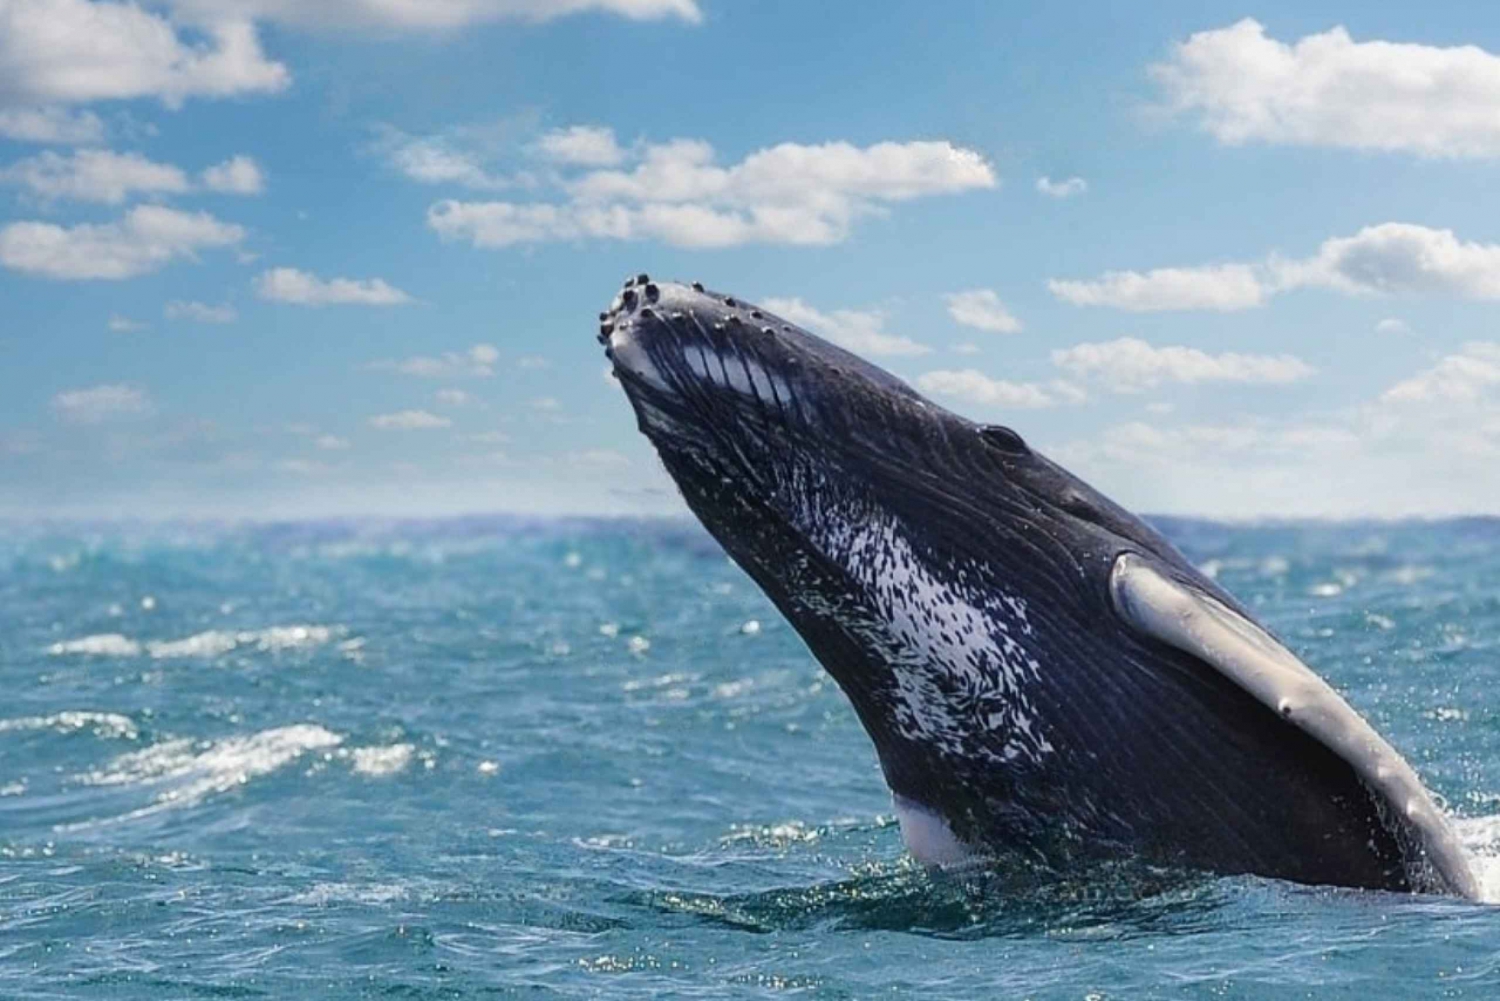 From Punta Cana: Samana Cayo Levantado / Whales